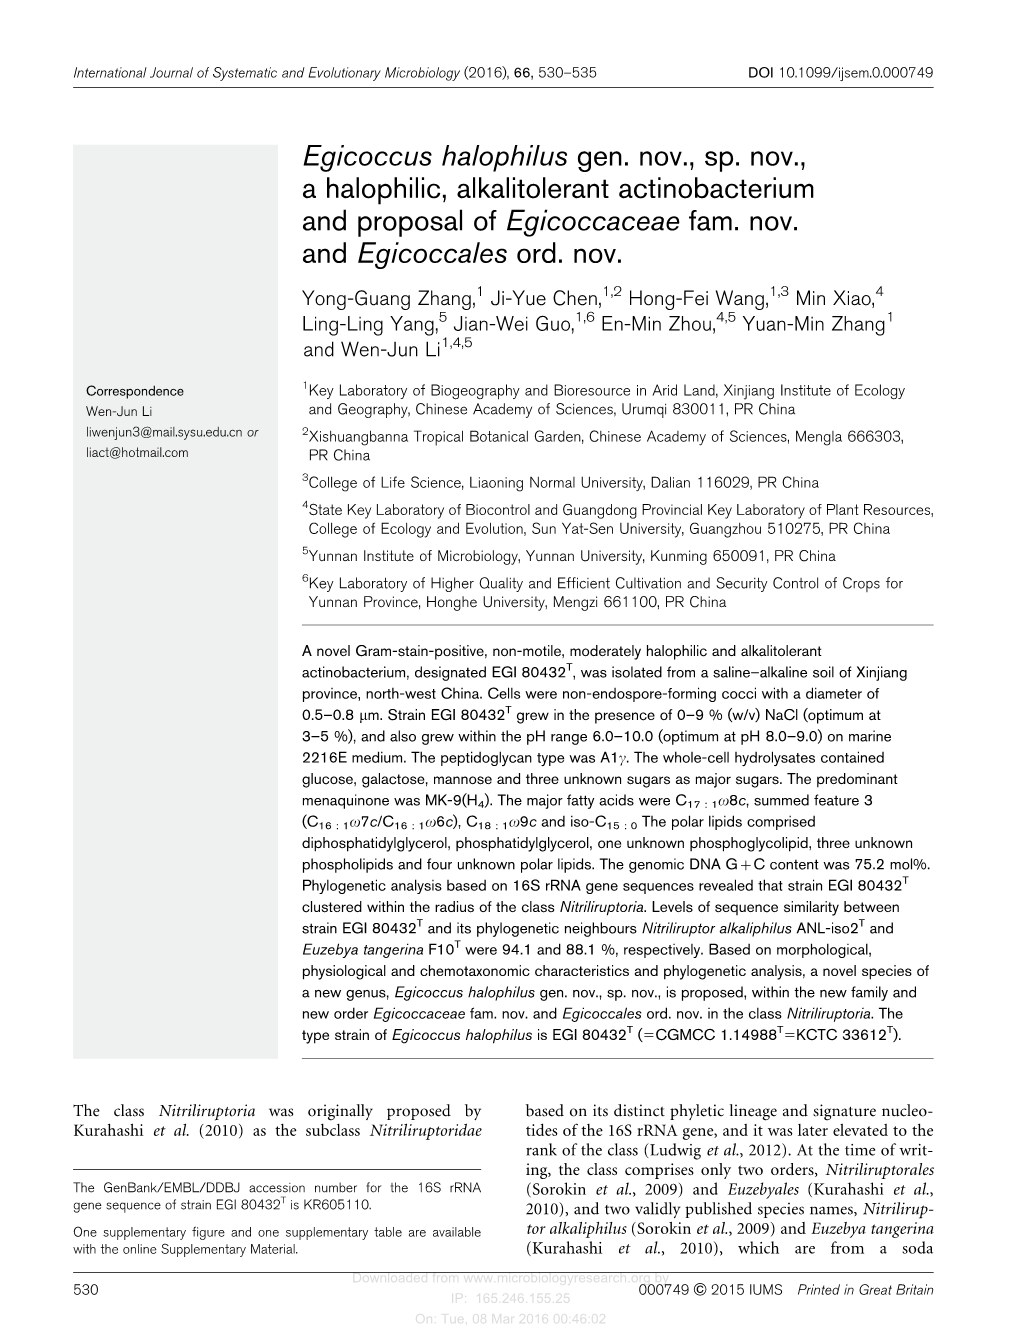 Egicoccus Halophilus Gen. Nov., Sp. Nov., a Halophilic, Alkalitolerant Actinobacterium and Proposal of Egicoccaceae Fam